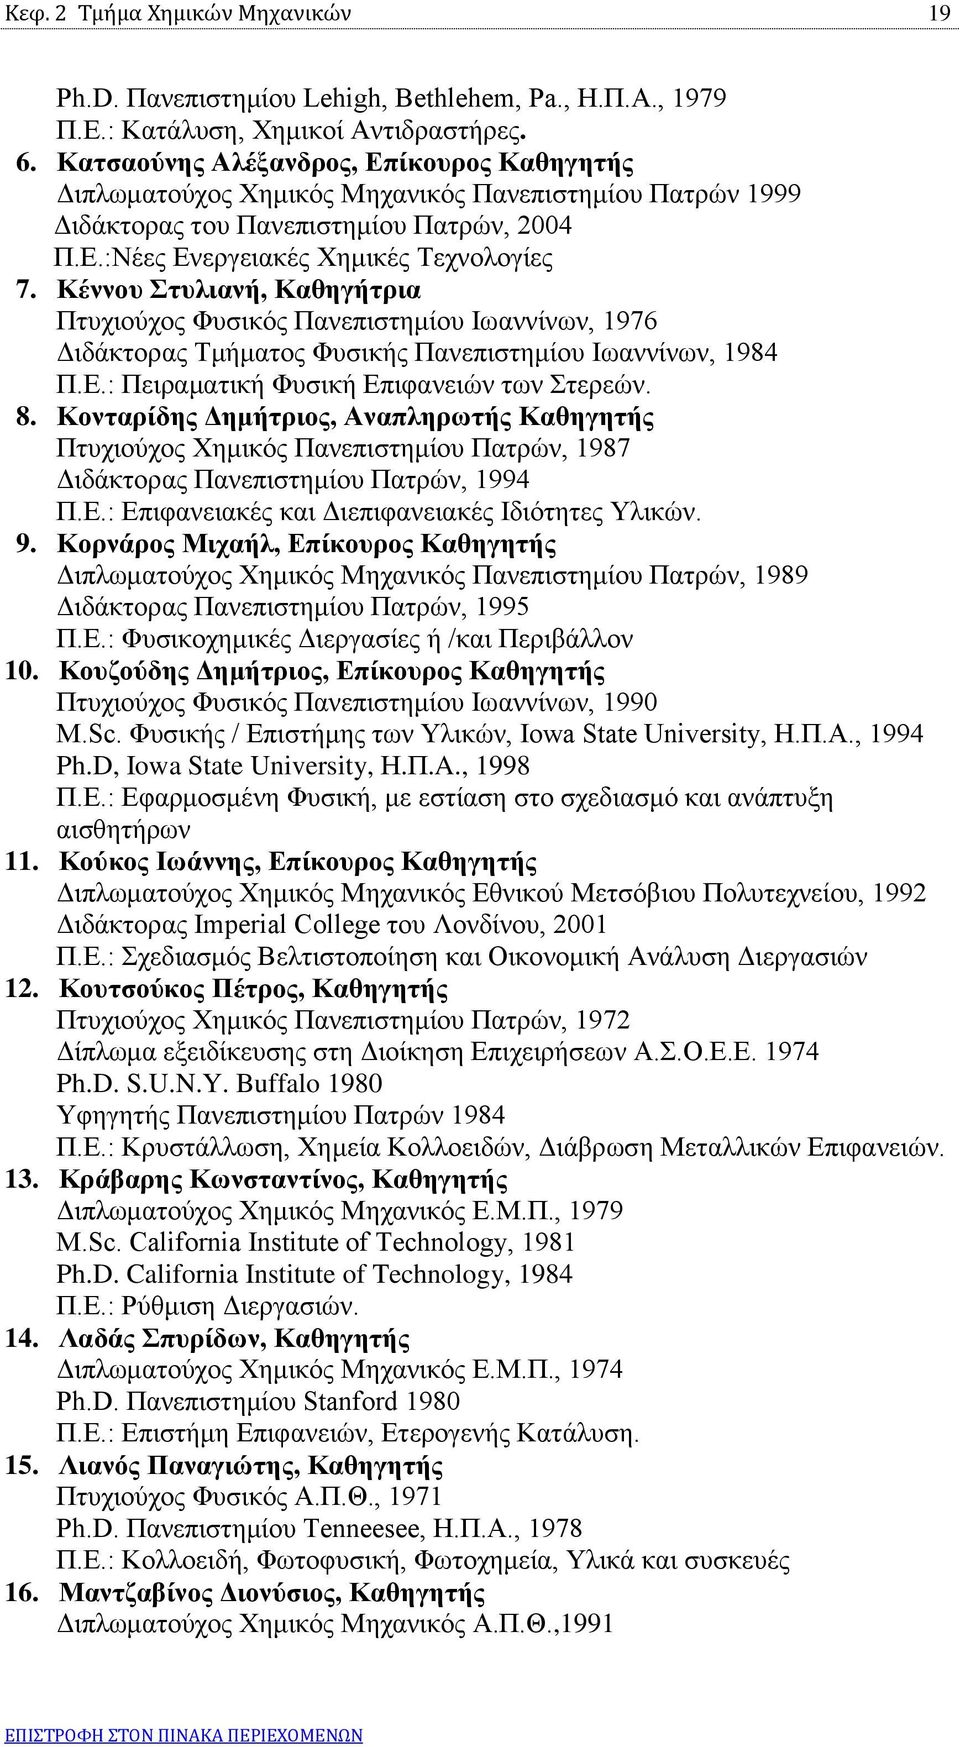 Κέννου Στυλιανή, Καθηγήτρια Πτυχιούχος Φυσικός Πανεπιστημίου Ιωαννίνων, 1976 Διδάκτορας Τμήματος Φυσικής Πανεπιστημίου Ιωαννίνων, 1984 Π.Ε.: Πειραματική Φυσική Επιφανειών των Στερεών. 8.